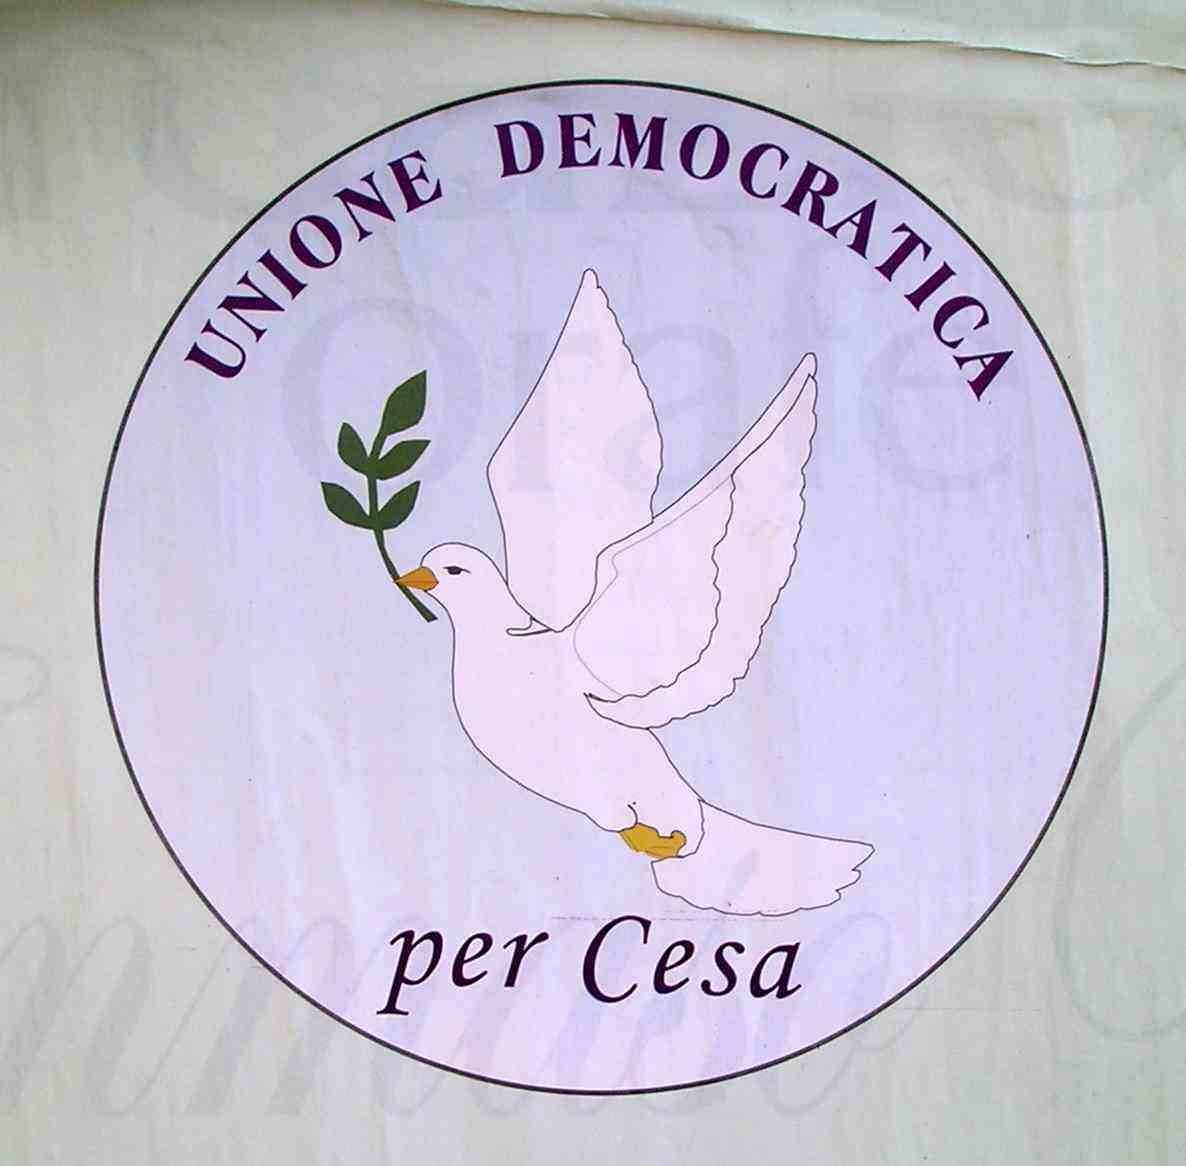 Unione Democratica per Cesa